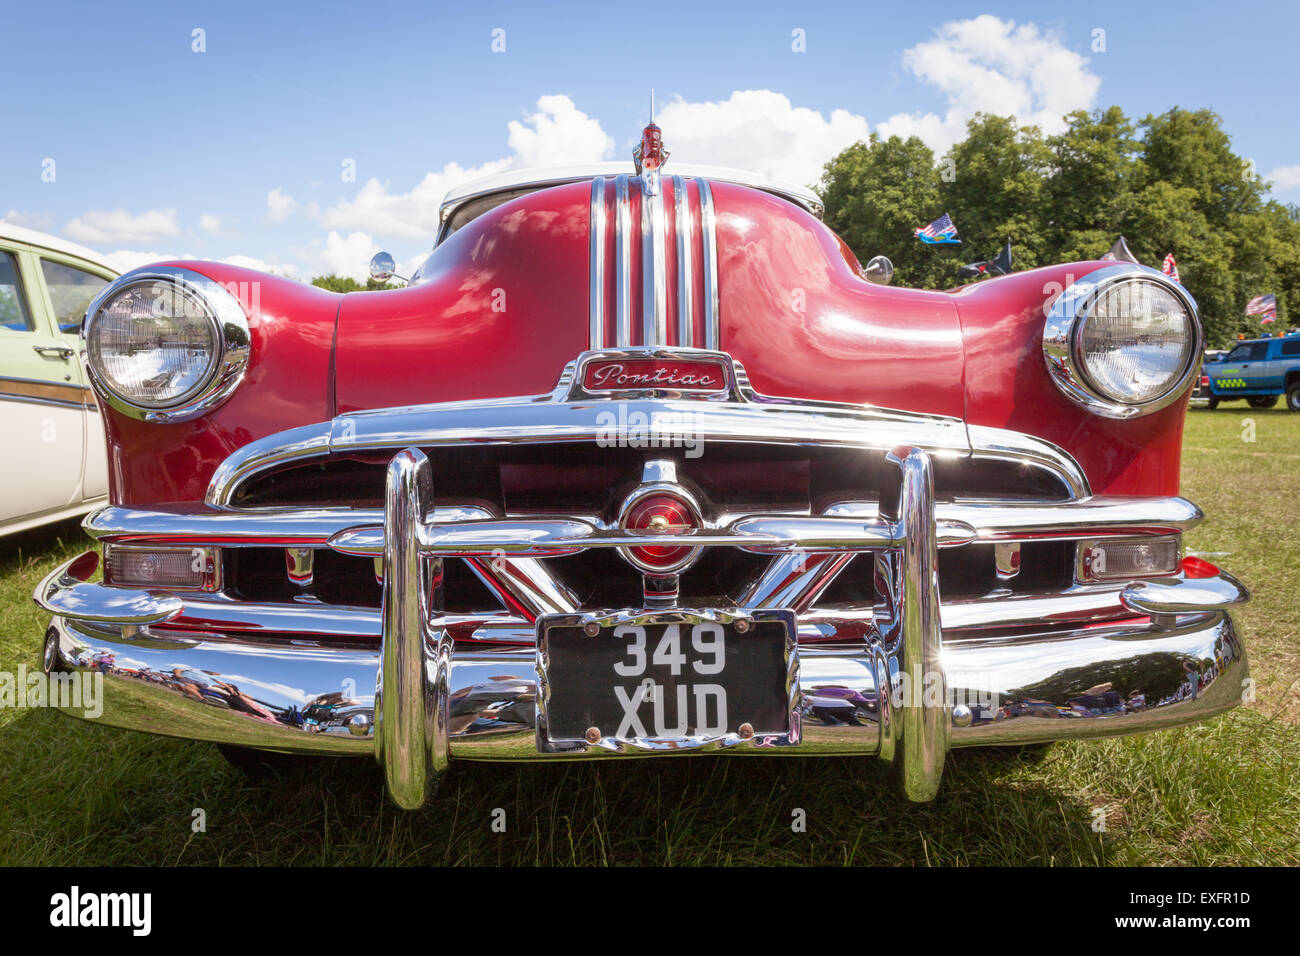 Classic American car in mostra in occasione di una mostra, UK Pontiac Foto Stock